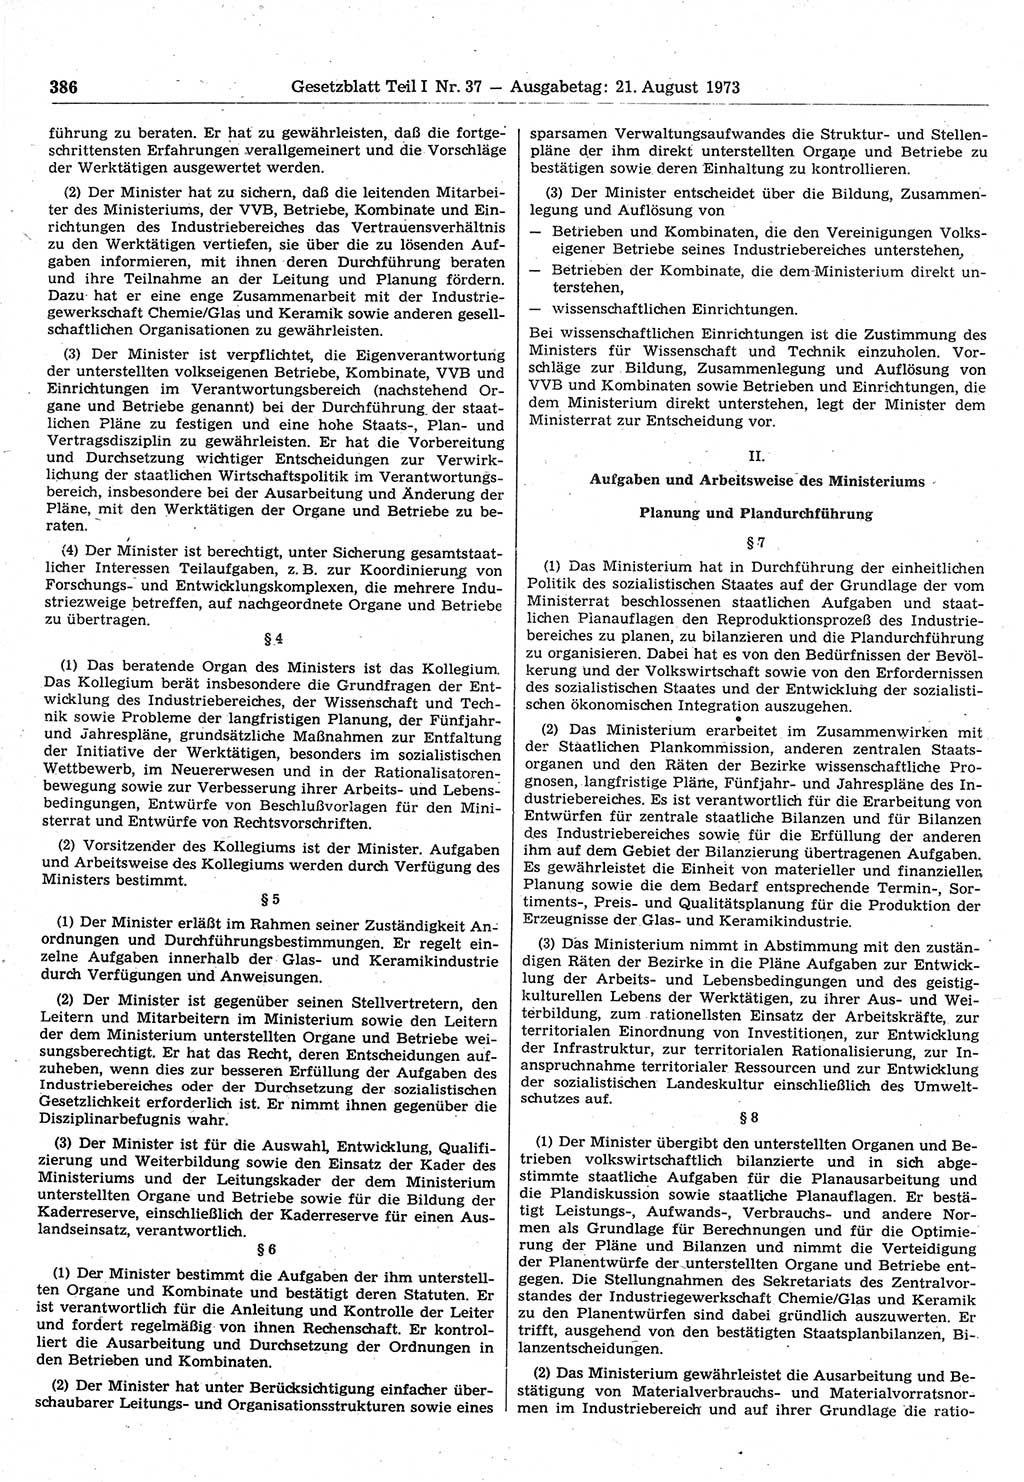 Gesetzblatt (GBl.) der Deutschen Demokratischen Republik (DDR) Teil Ⅰ 1973, Seite 386 (GBl. DDR Ⅰ 1973, S. 386)